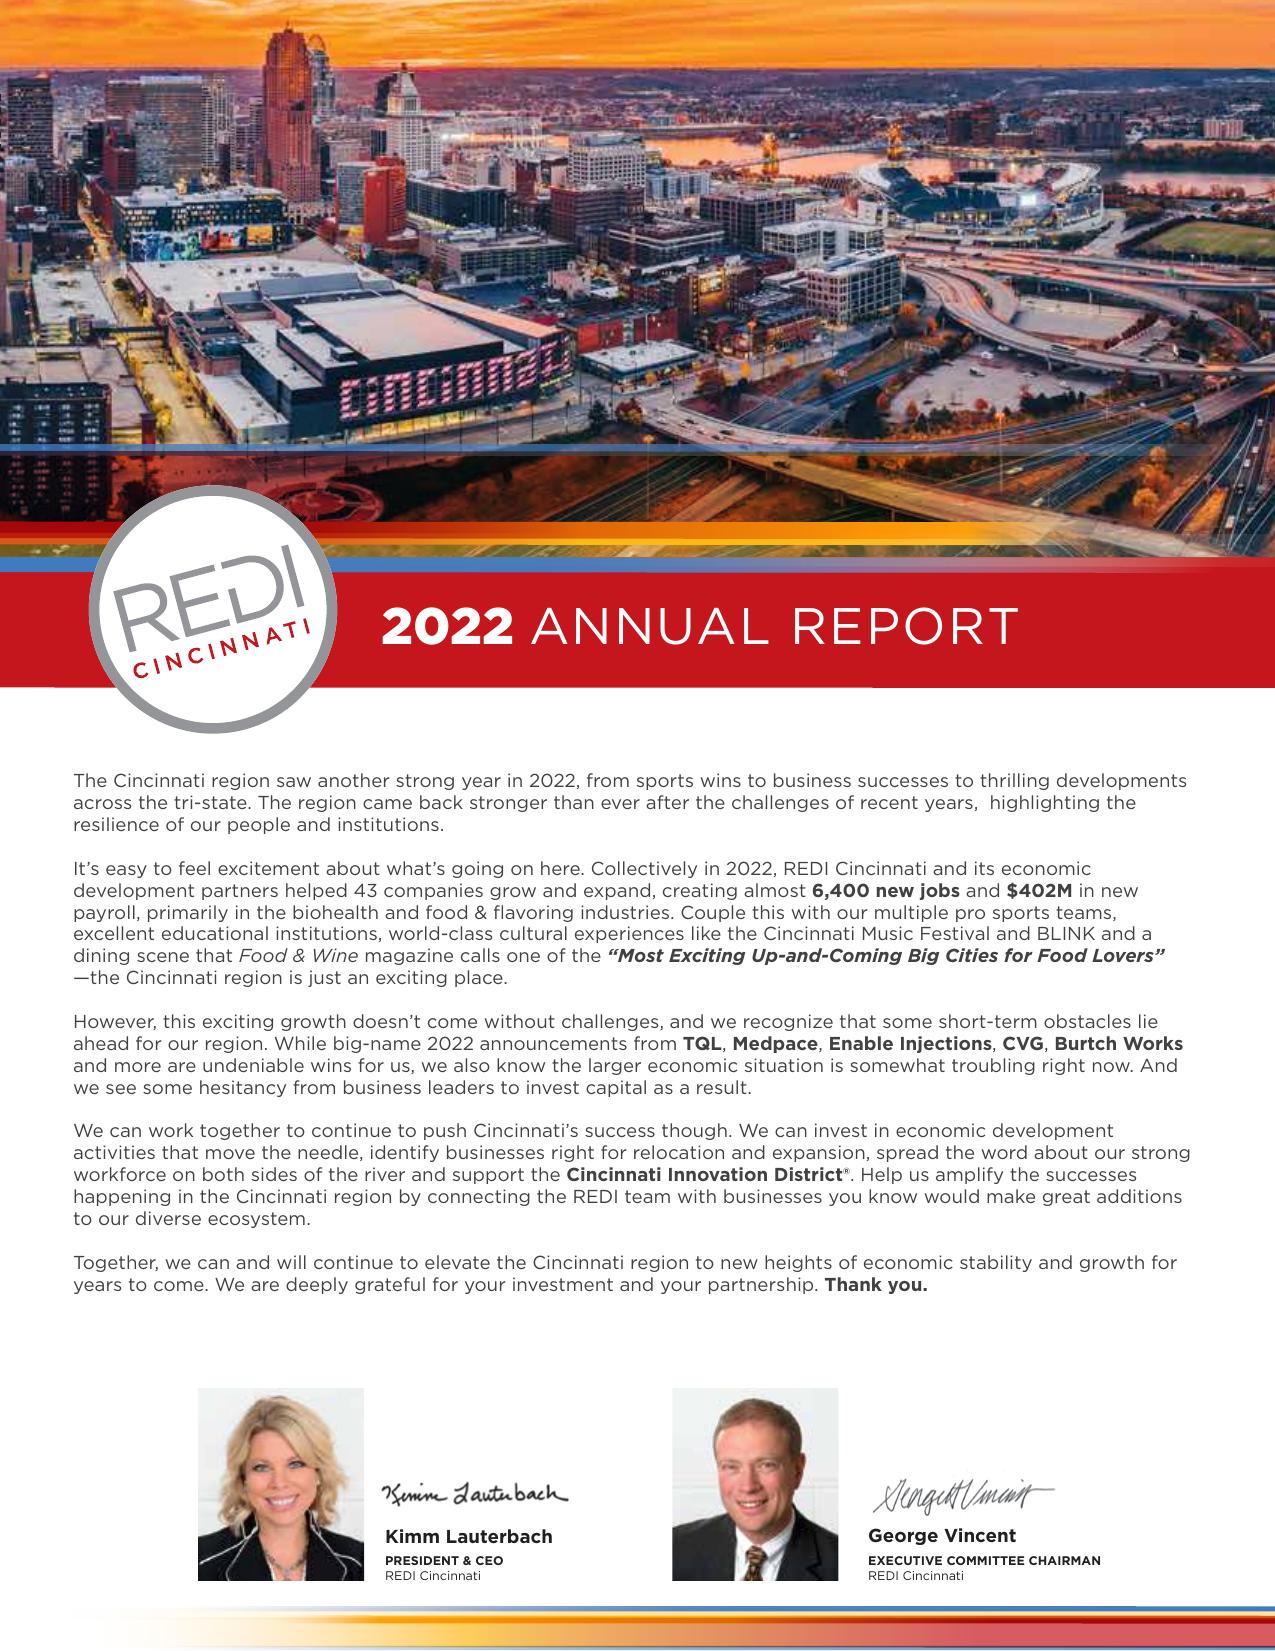 REDICINCINNATI 2023 Annual Report